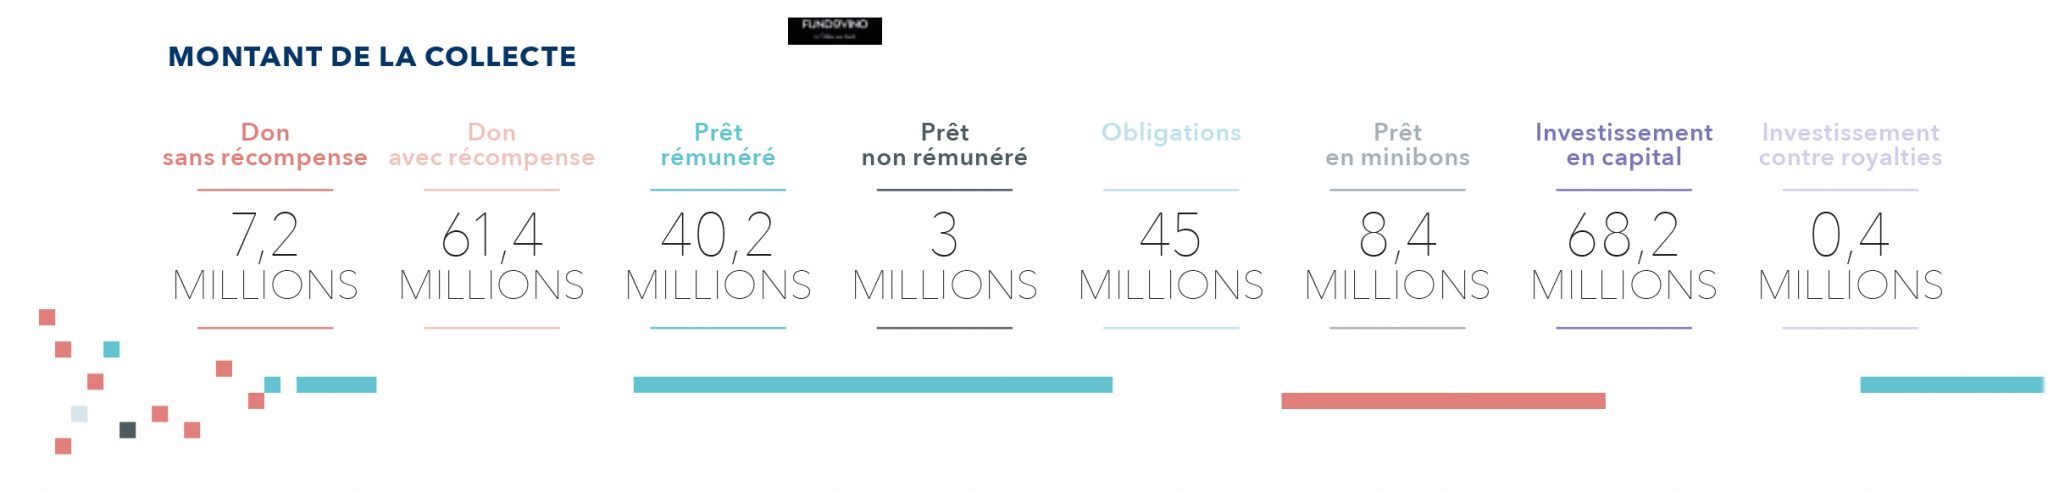 Le financement participatif en France : montant de la collecte en 2016